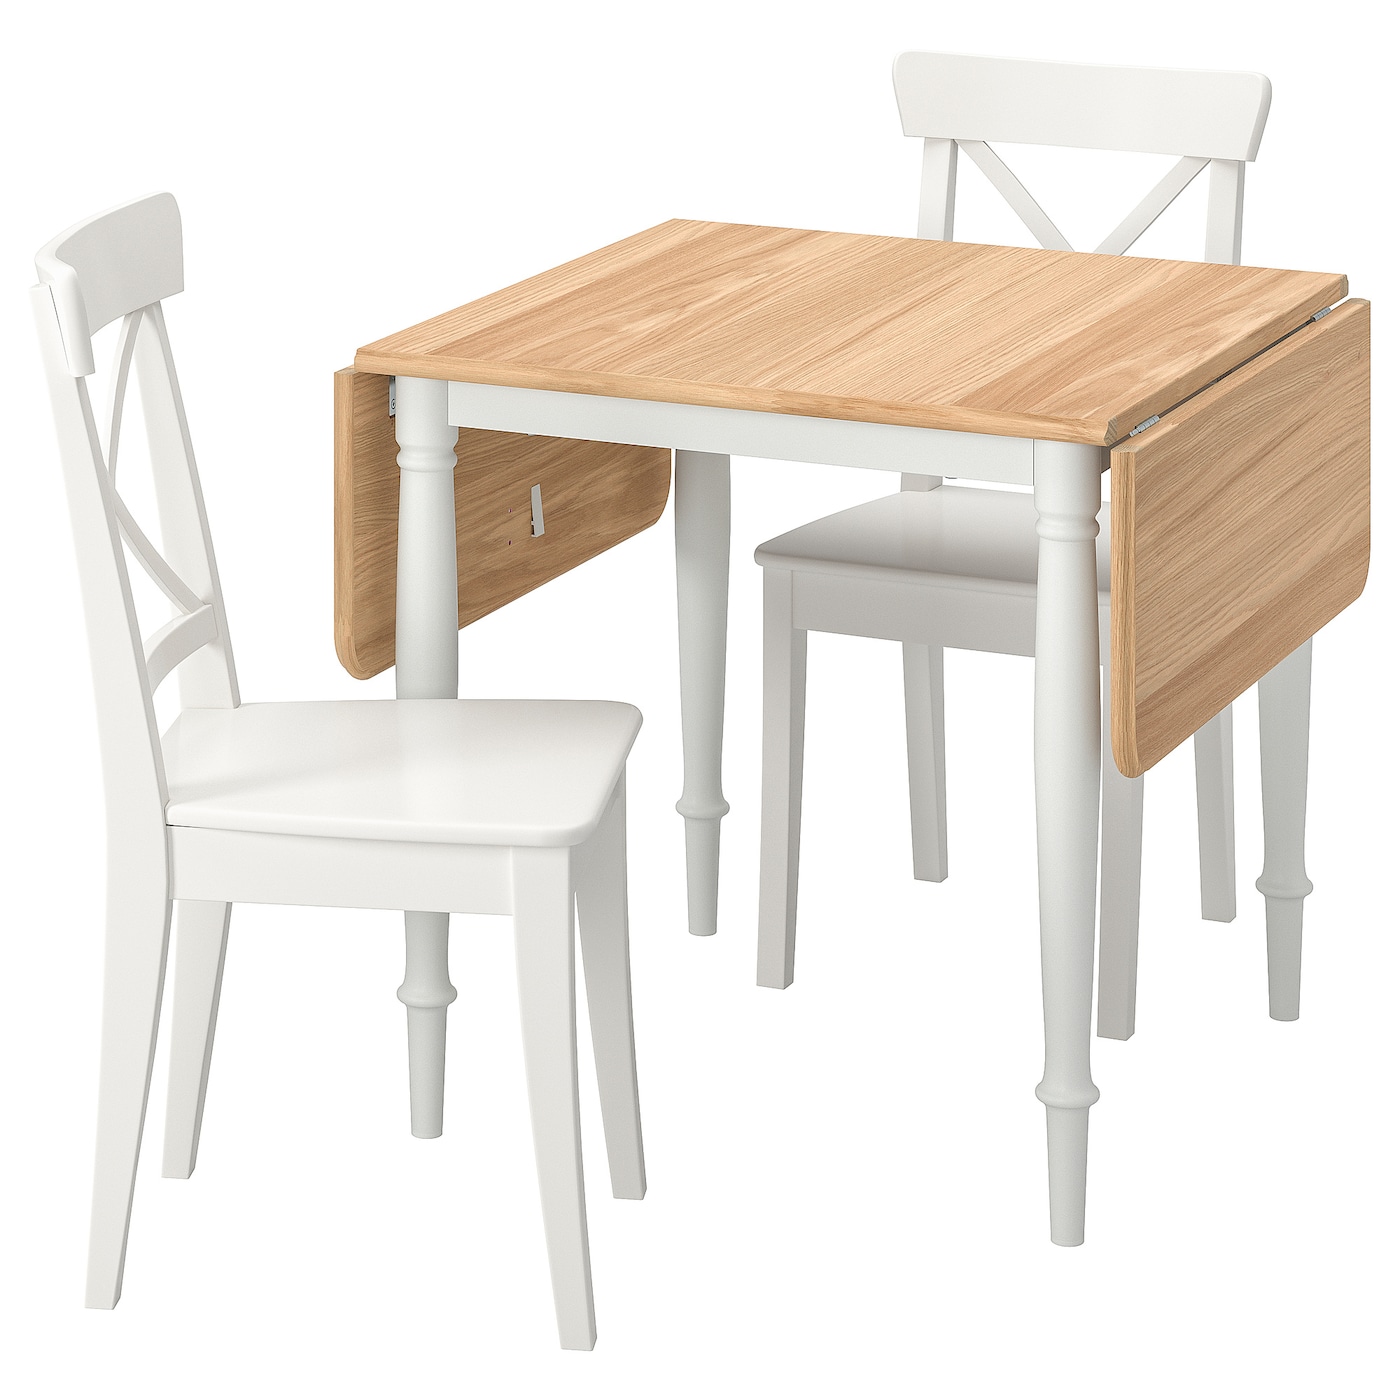 Набор кухонных столов - DANDERYD/INGOLF IKEA/ ДАНДЕРИТ/ИНГОЛЬФ ИКЕА, 134х80х74 см, белый